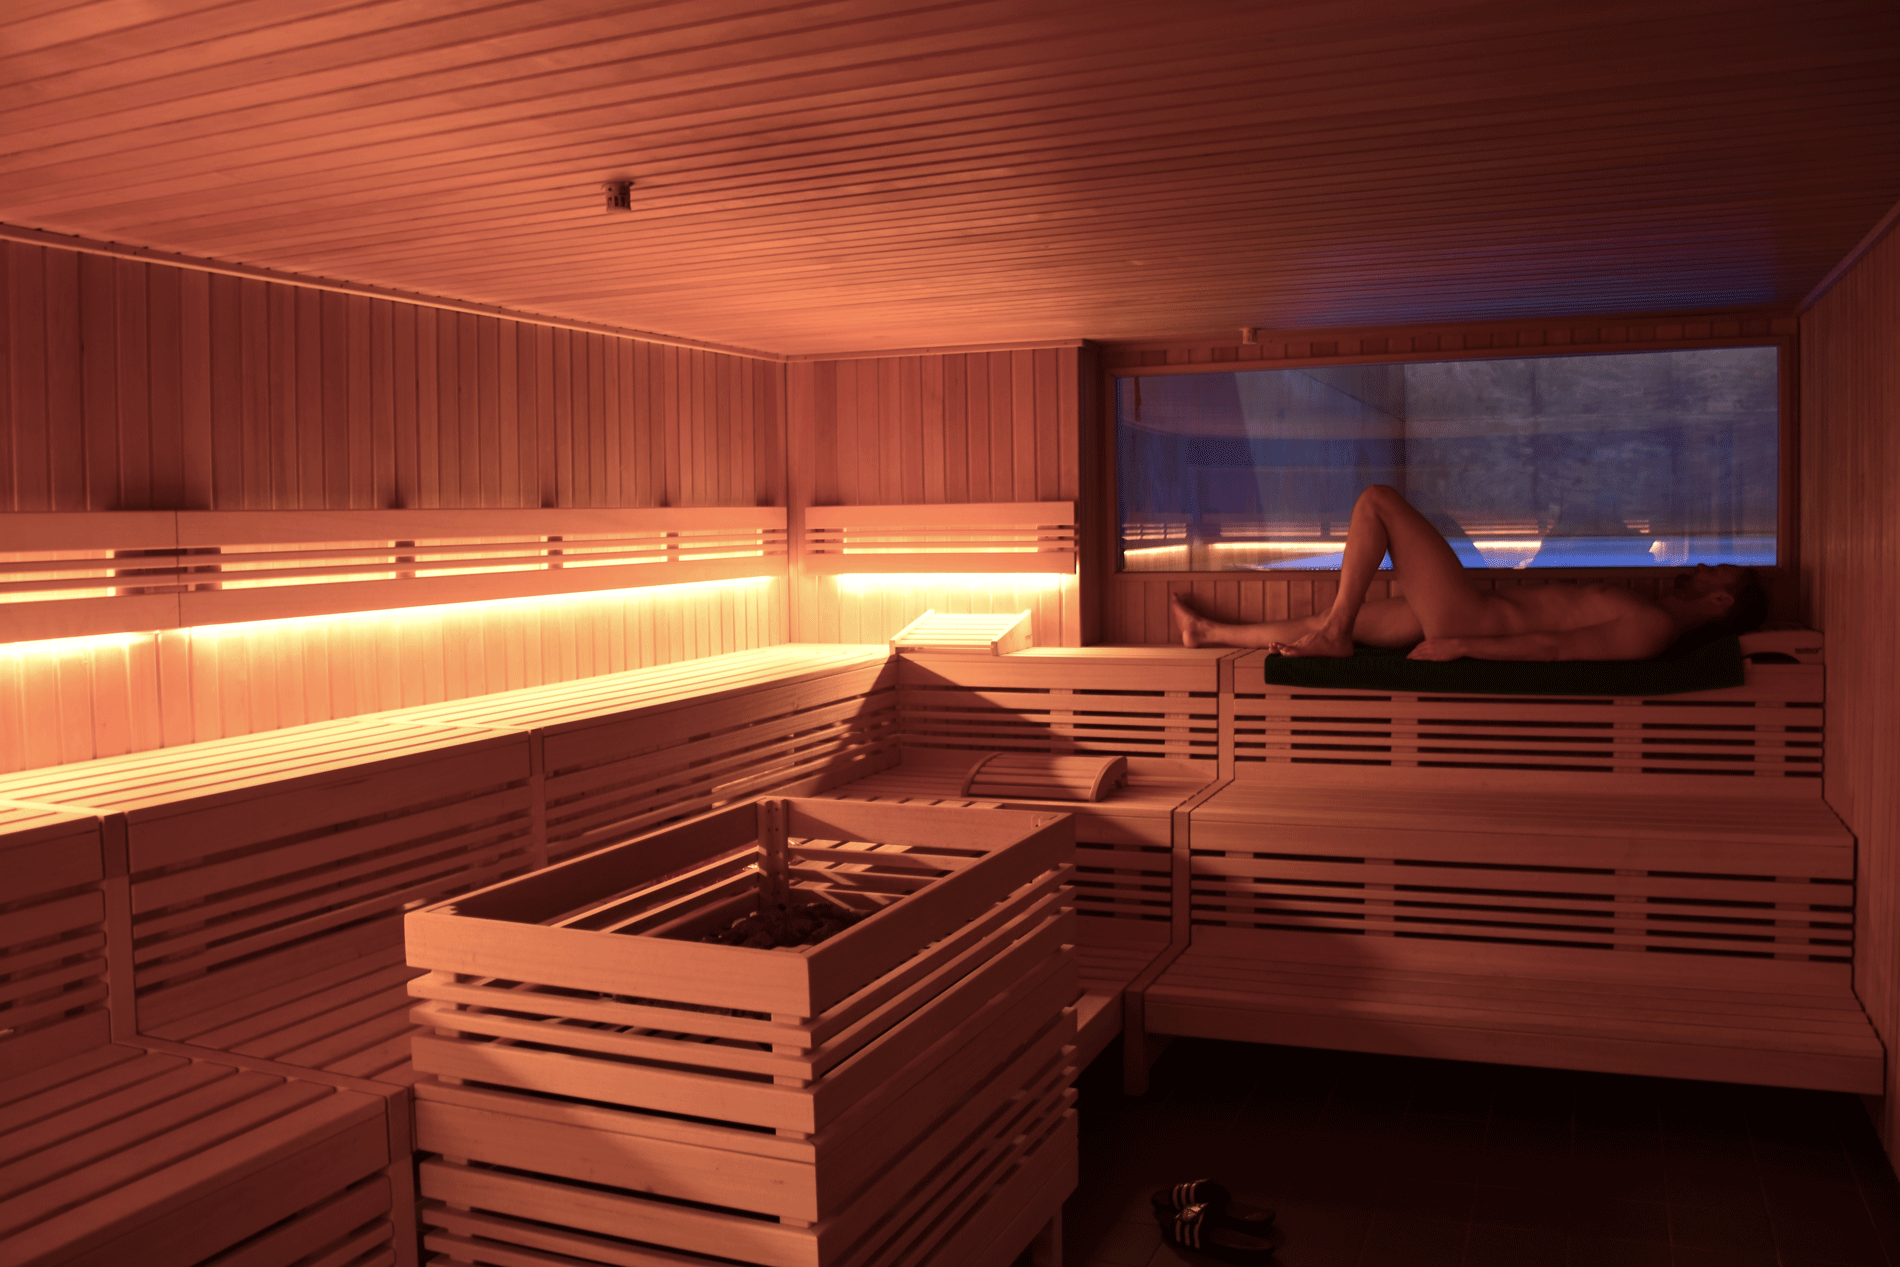 Essen sauna club in 